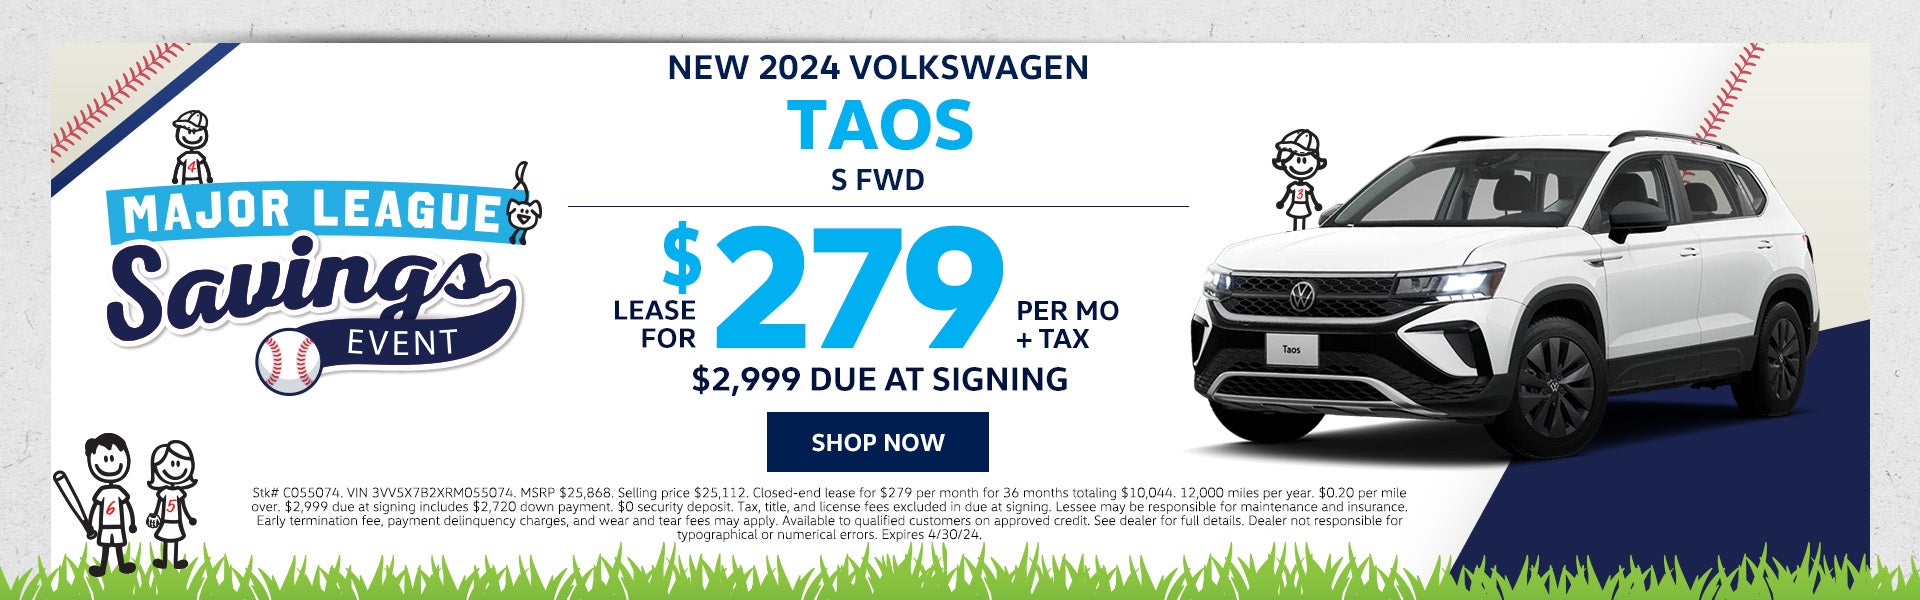 New 2024 VW Taos